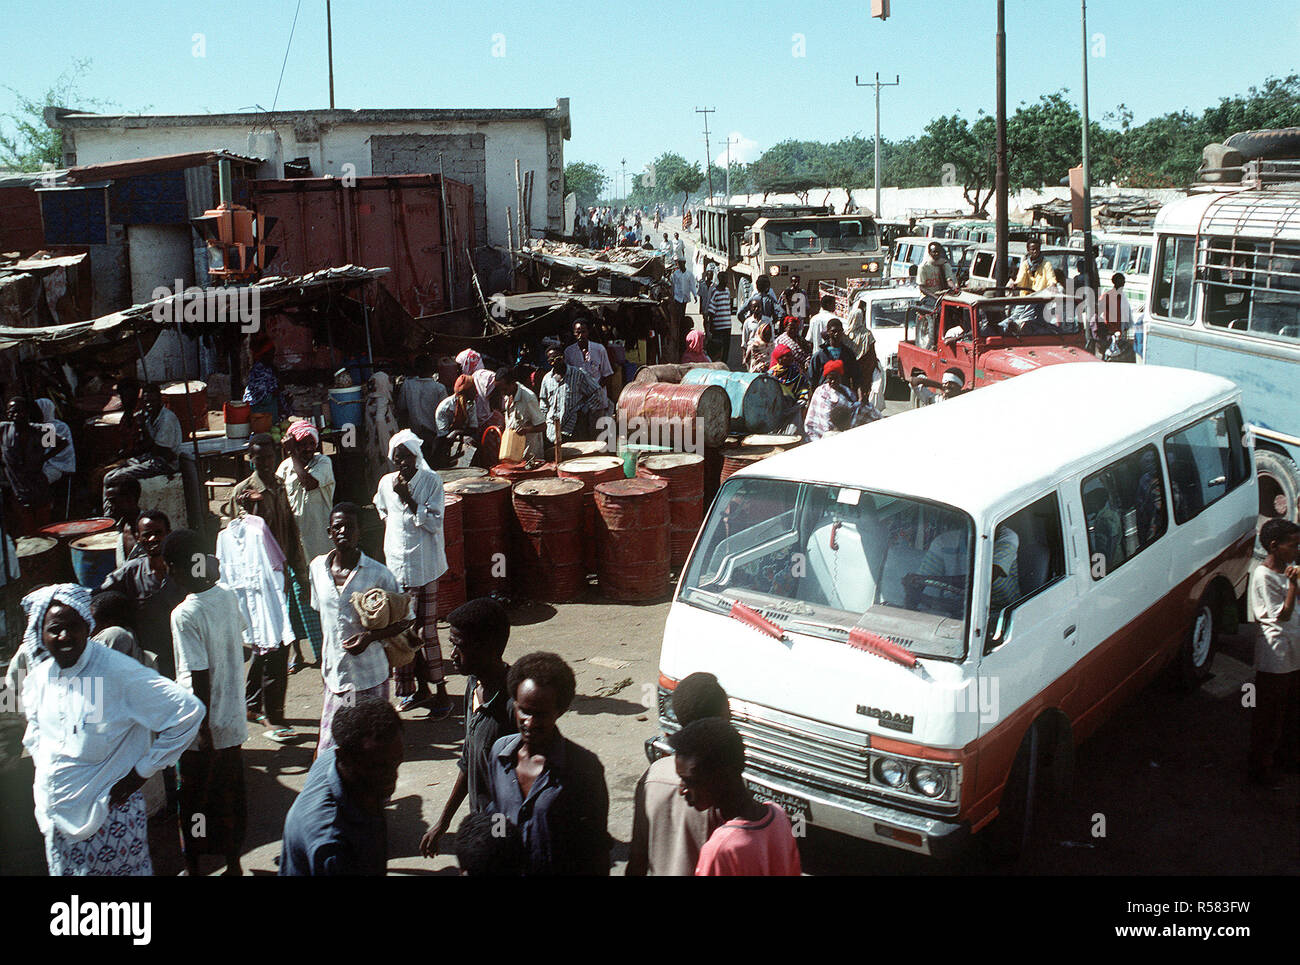 1992 - Les gens et les véhicules foule un coin de rue au cours de l'effort de secours multinationales l'Opération Restore Hope. Mogadiscio (Somalie) Banque D'Images